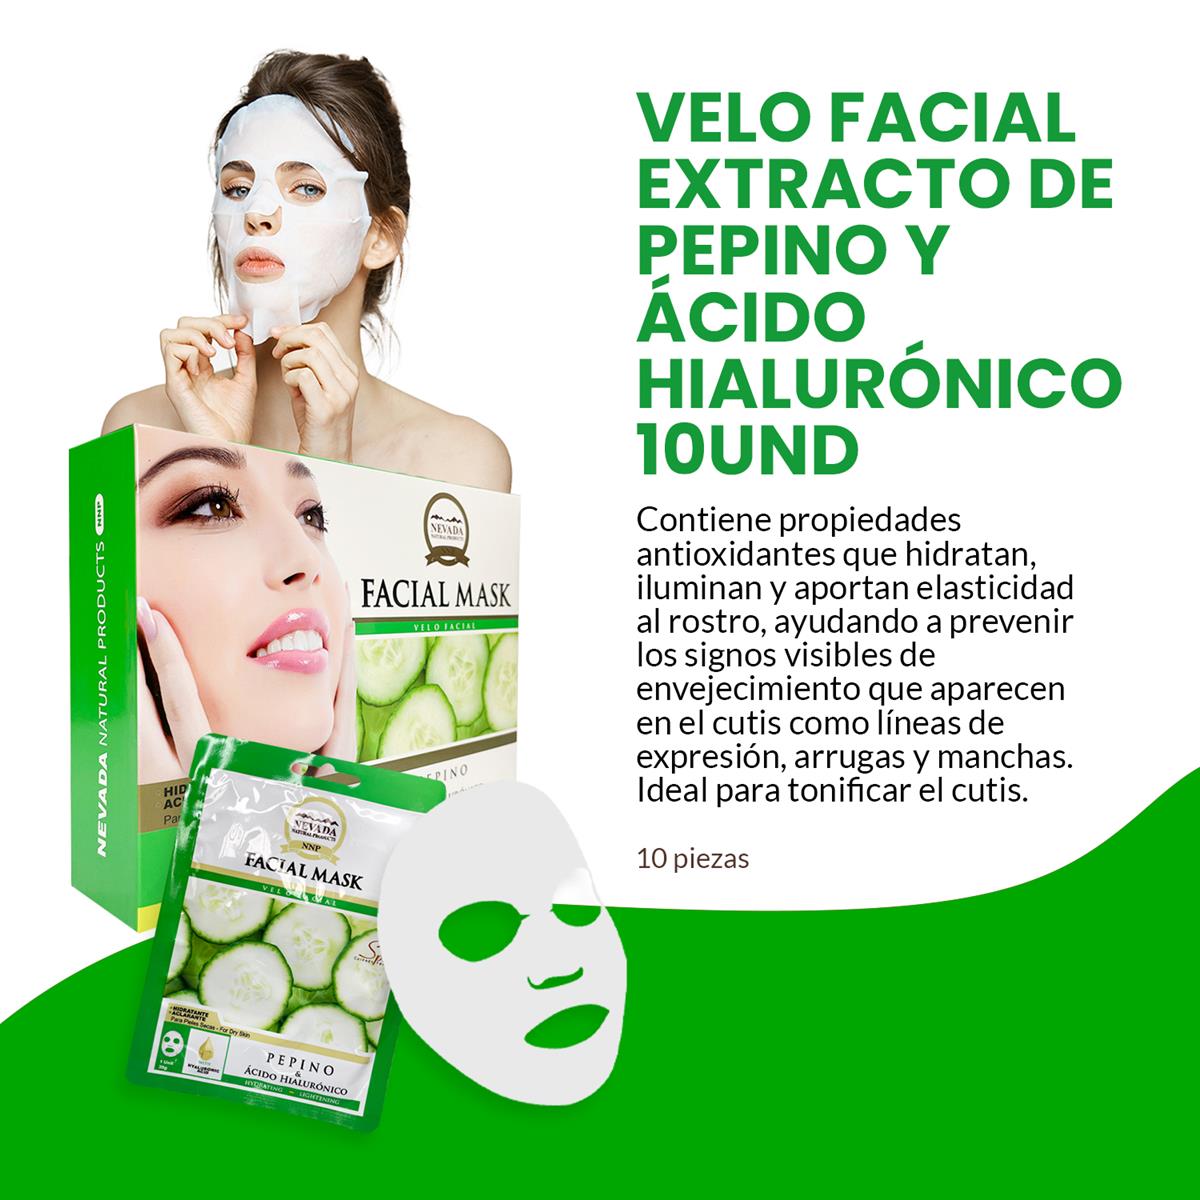 Velo facial extracto de pepino y ácido hialurónico 10unid